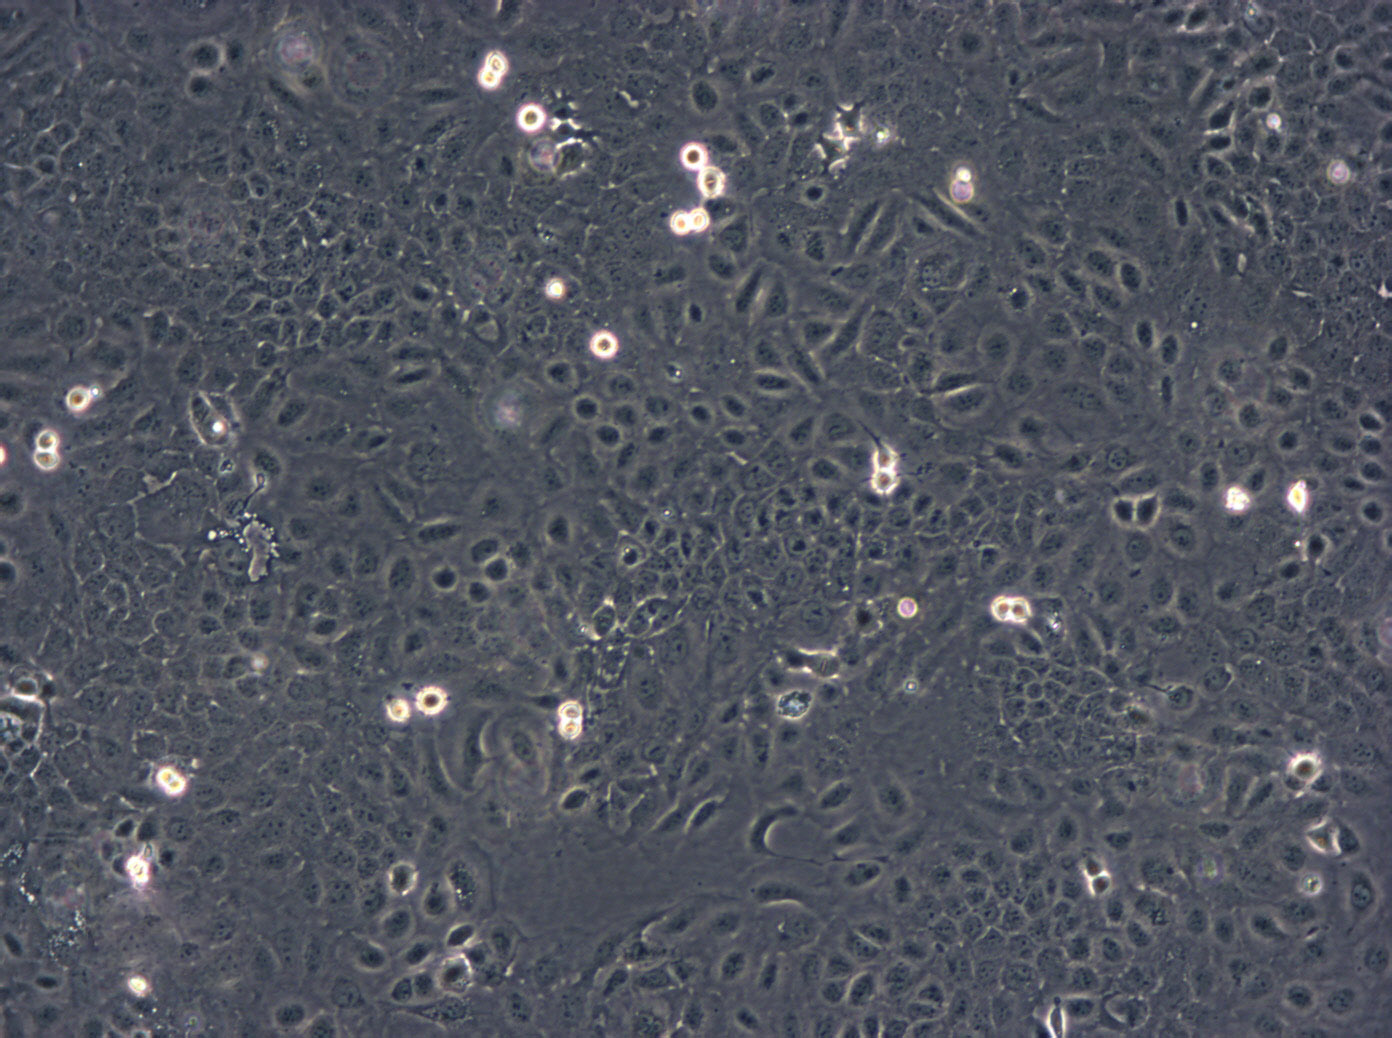 OE33 Cells(赠送Str鉴定报告)|人食管腺癌细胞